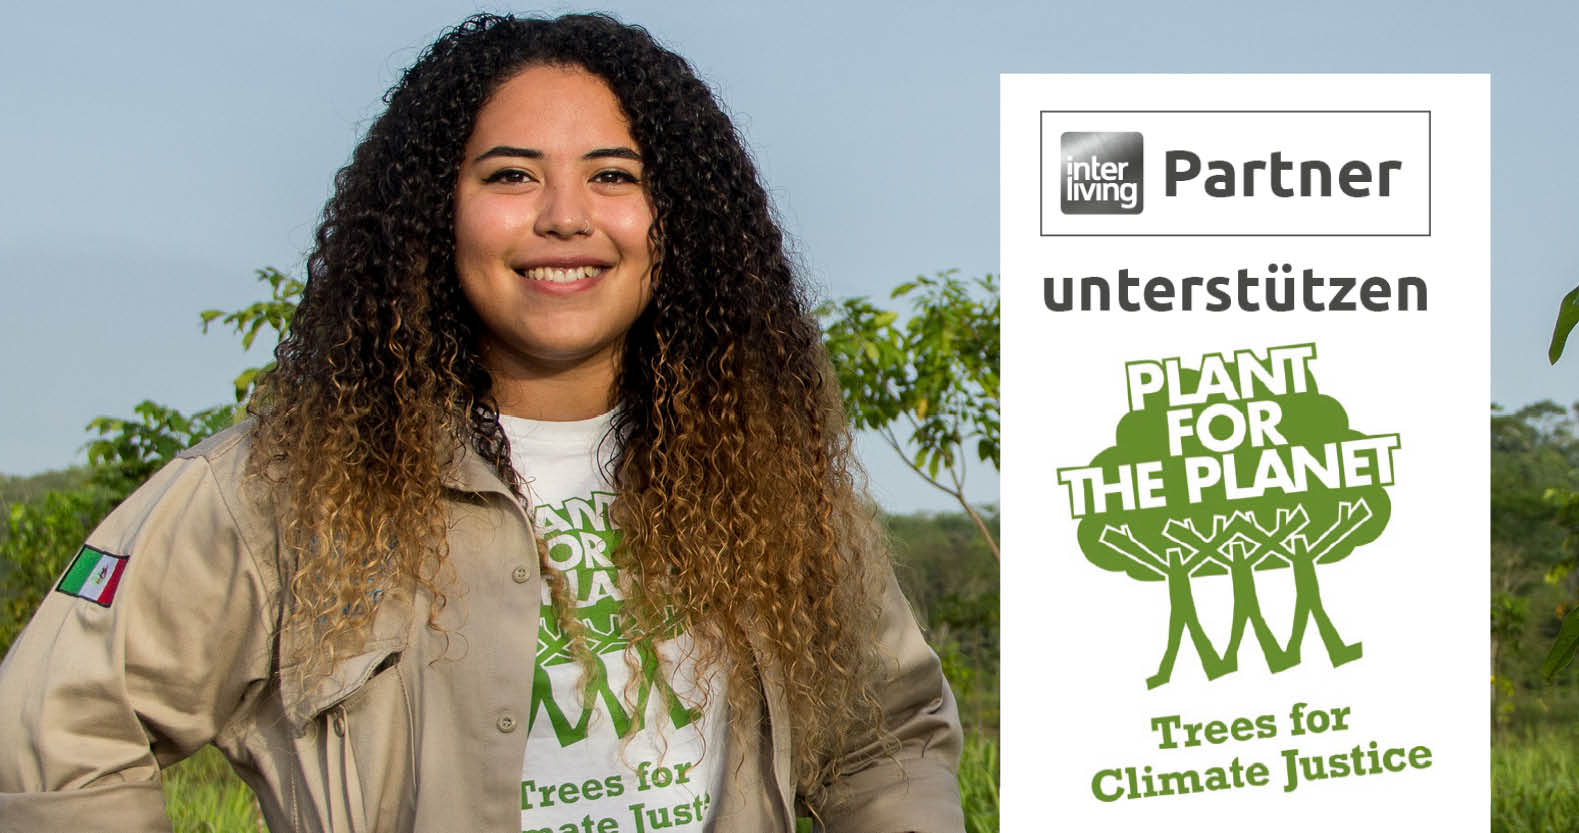 Das Ziel: Auf der ganzen Welt Bäume pflanzen, um die Klimakrise zu bekämpfen